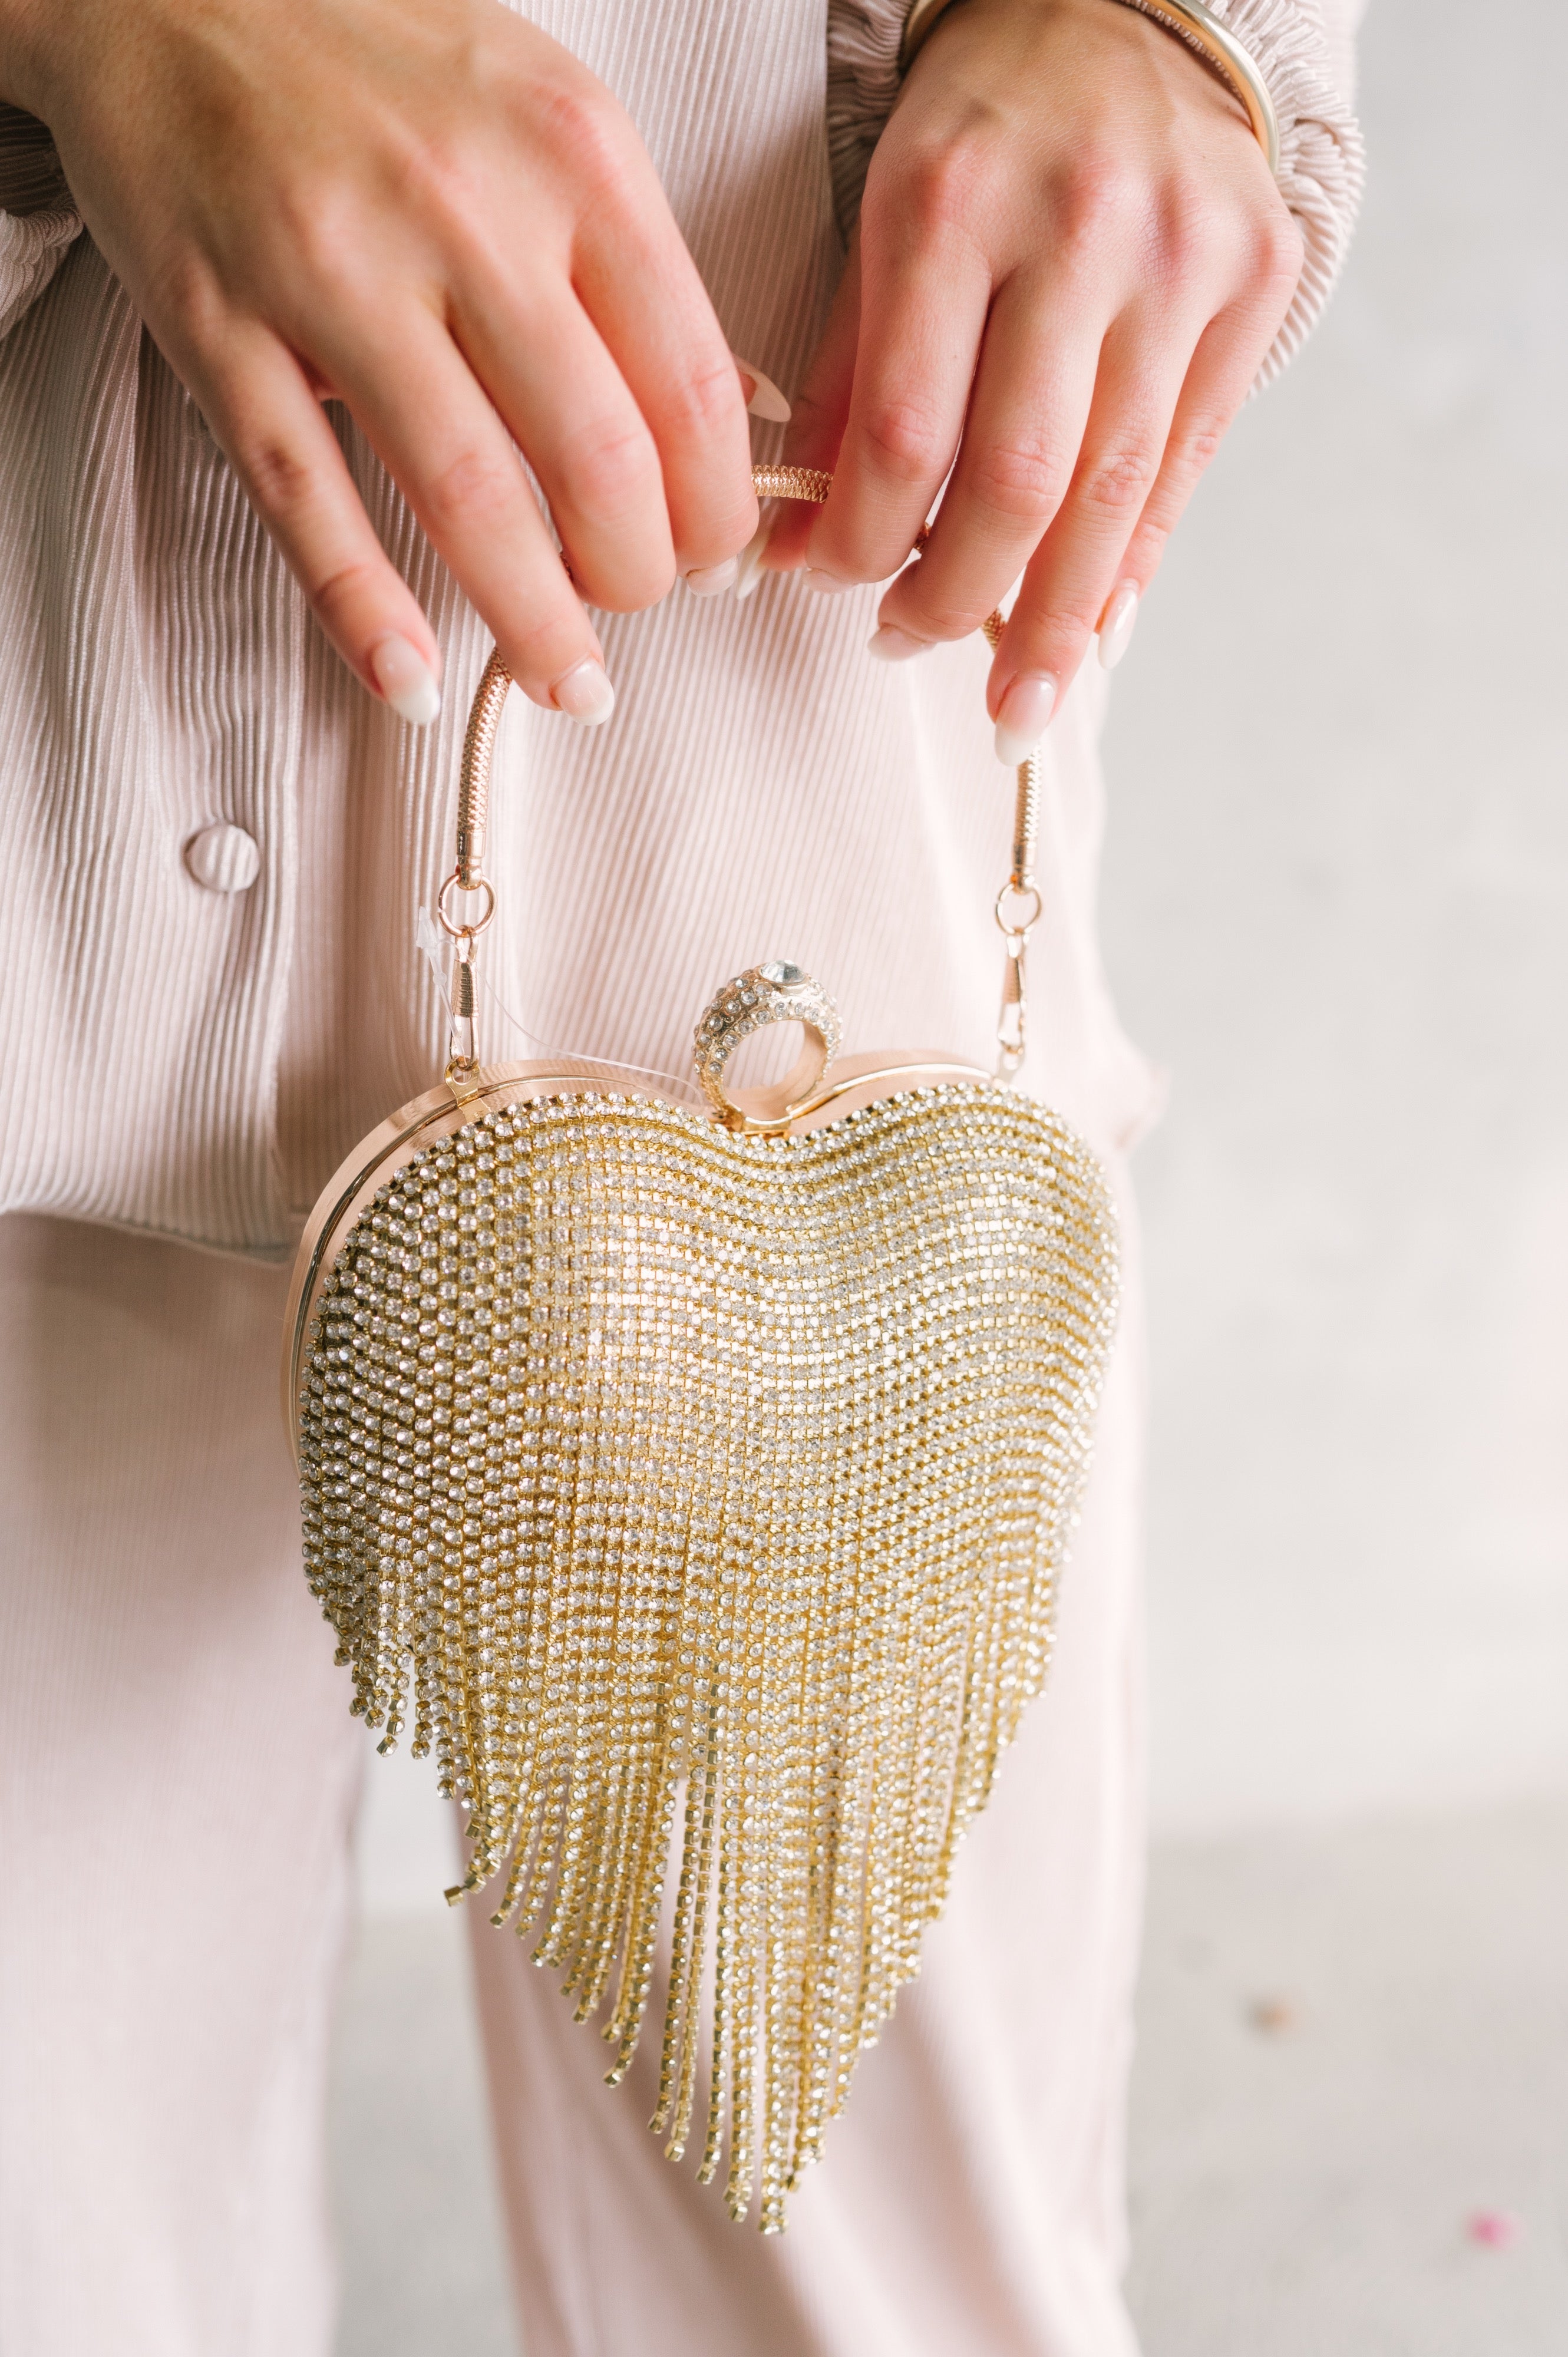 heart shaped purse